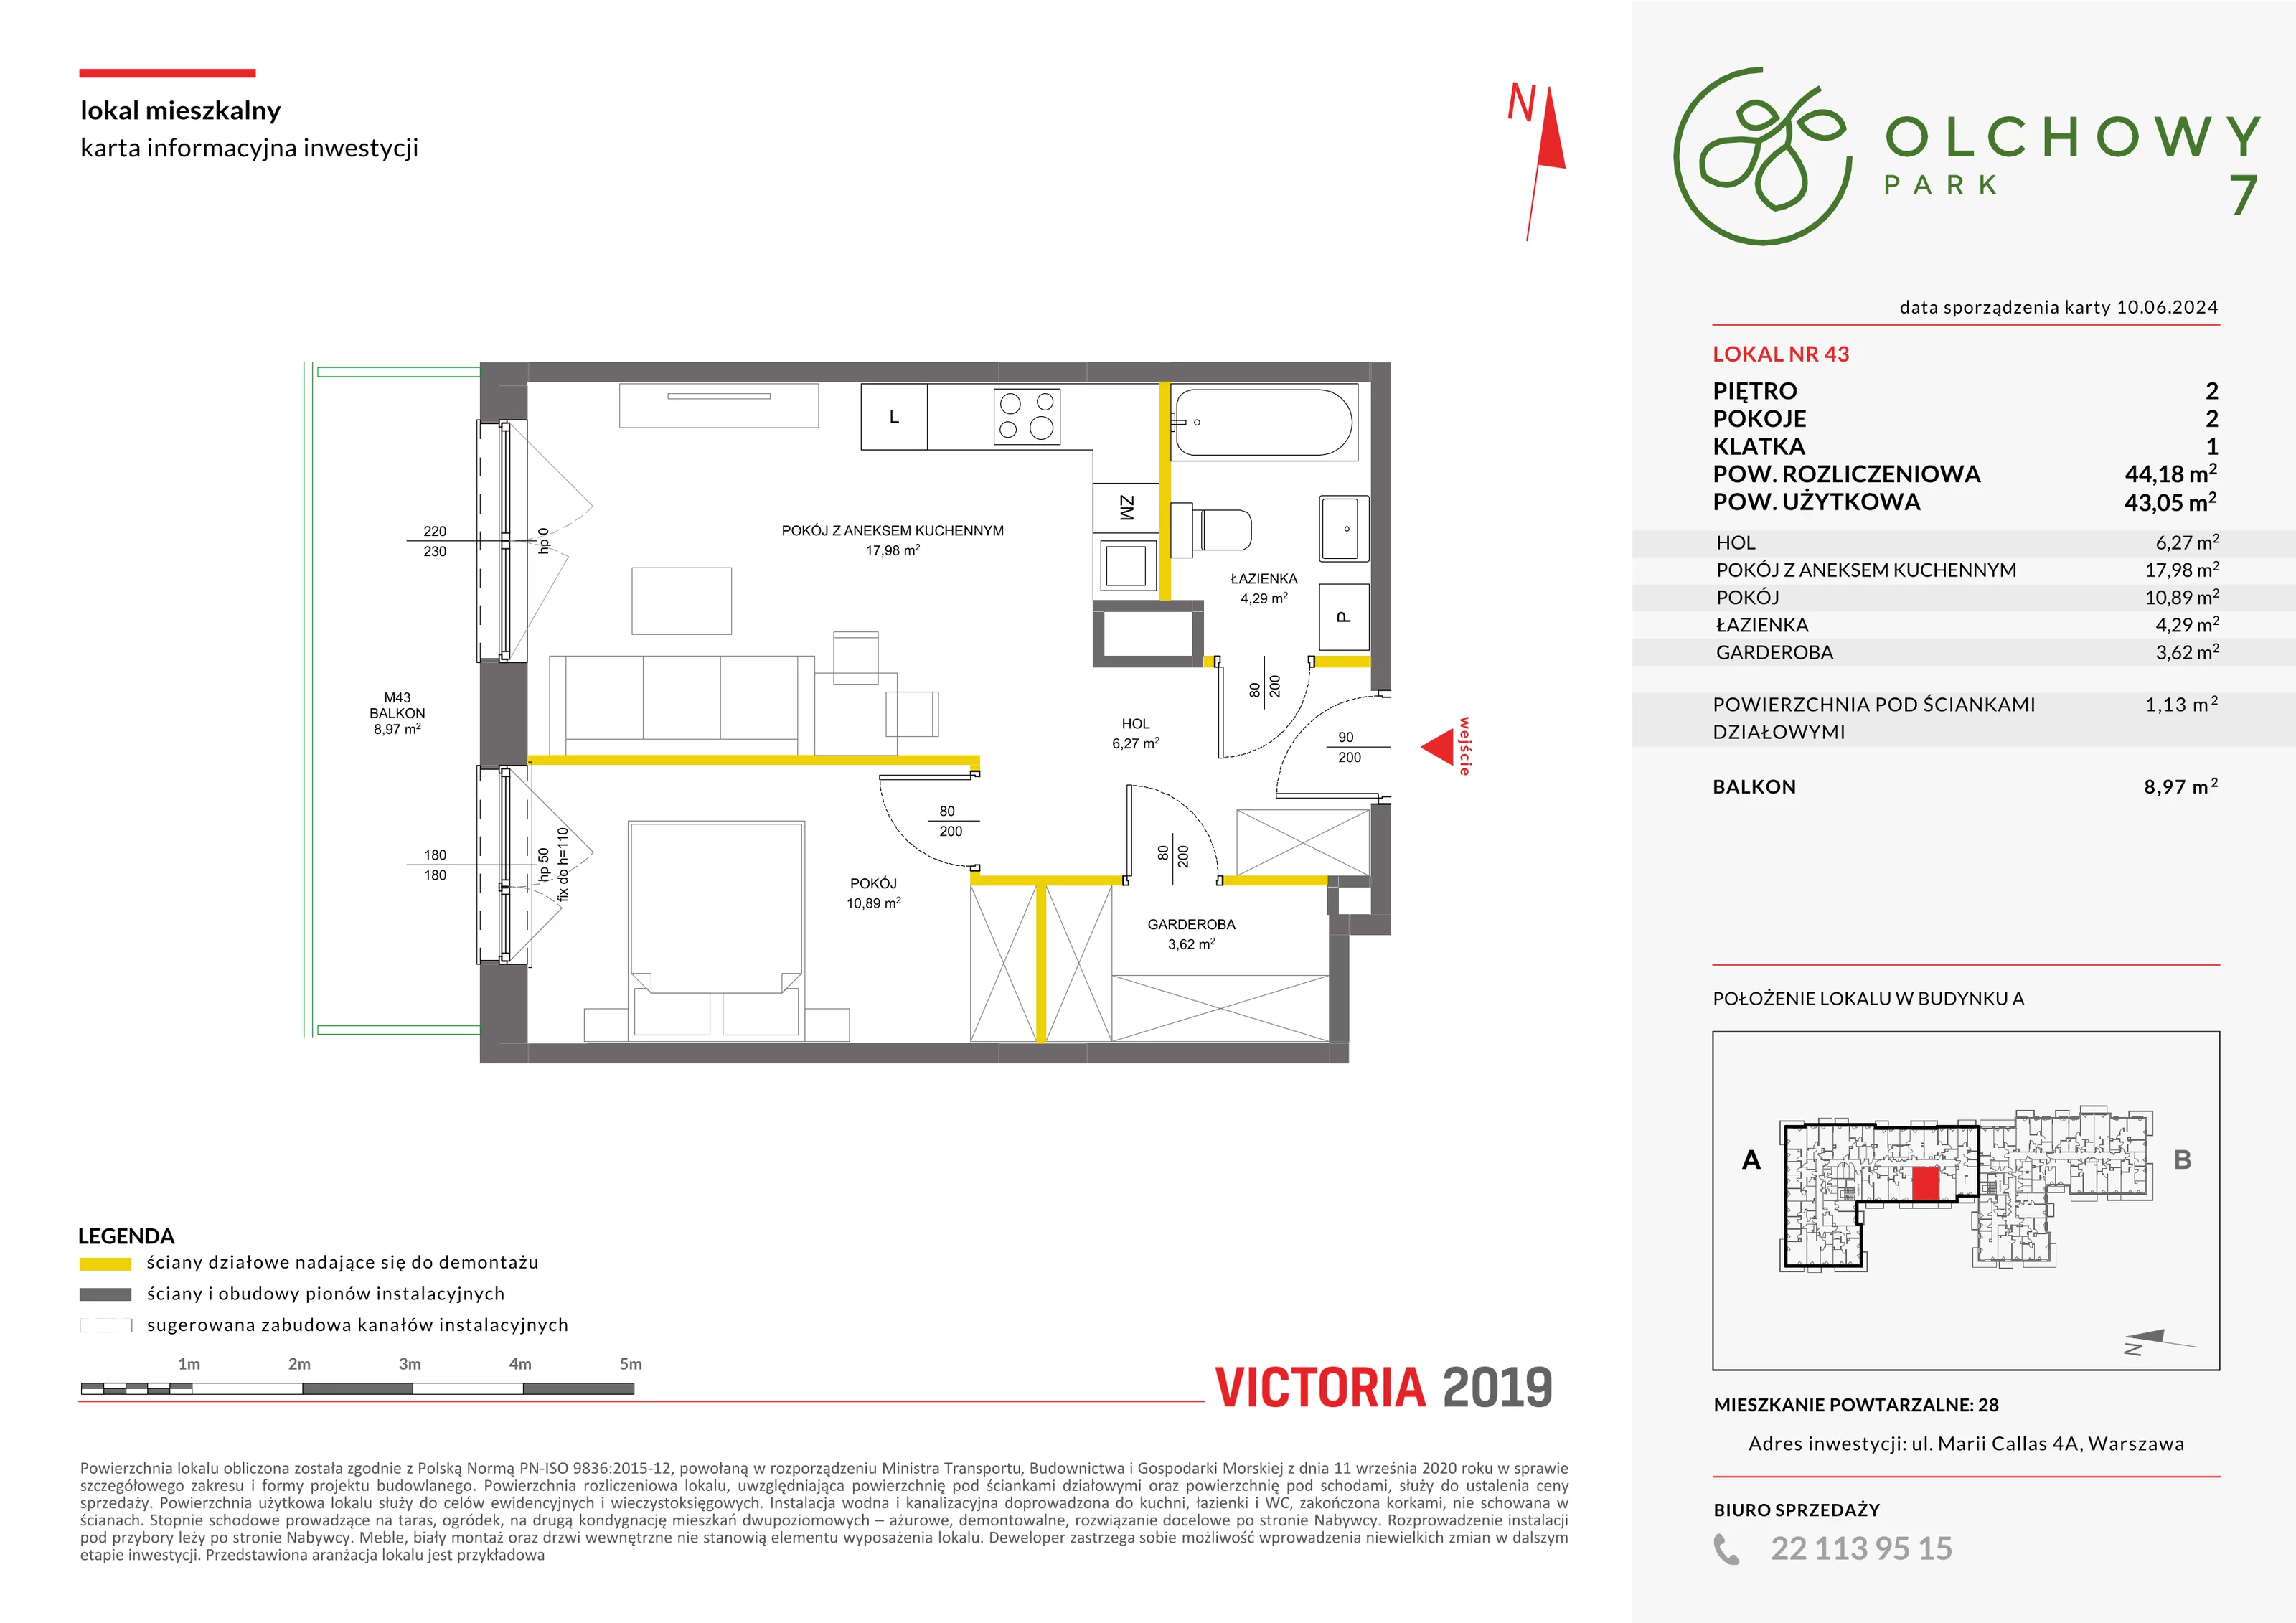 Mieszkanie 44,18 m², piętro 2, oferta nr VII/43, Olchowy Park 7, Warszawa, Białołęka, Kobiałka, ul. Marii Callas 4A